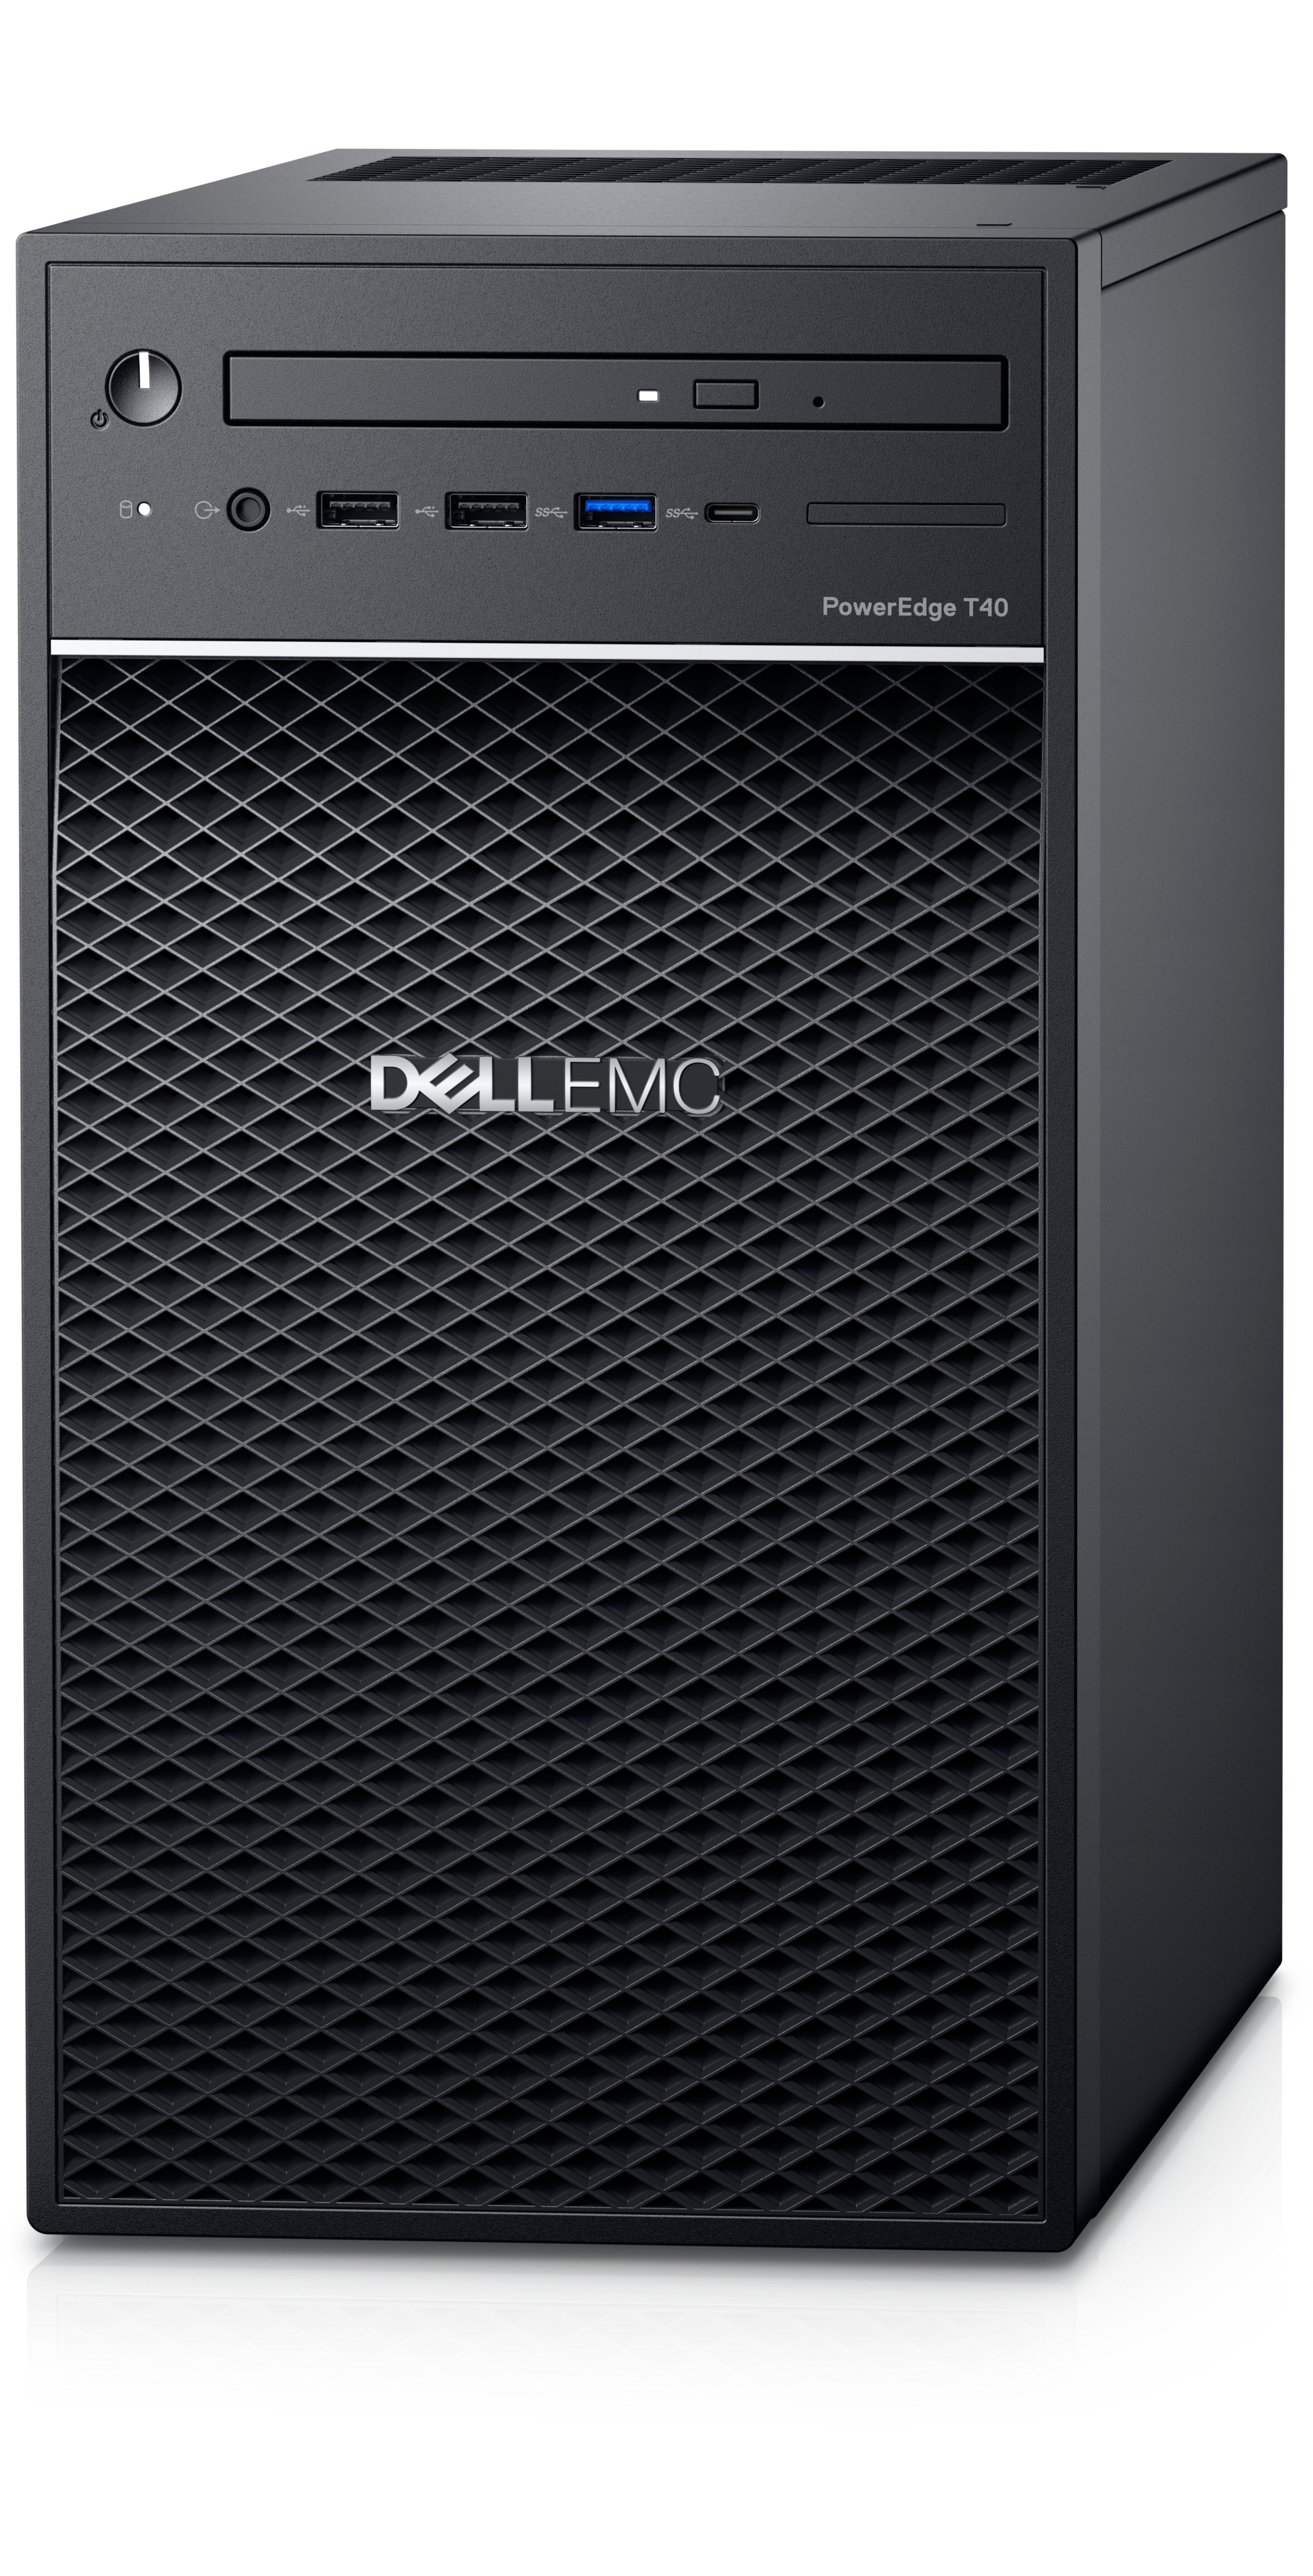 Dell PowerEdge T40 Server with Intel Quad Core Xeon E-2224G / 8GB / 1TB